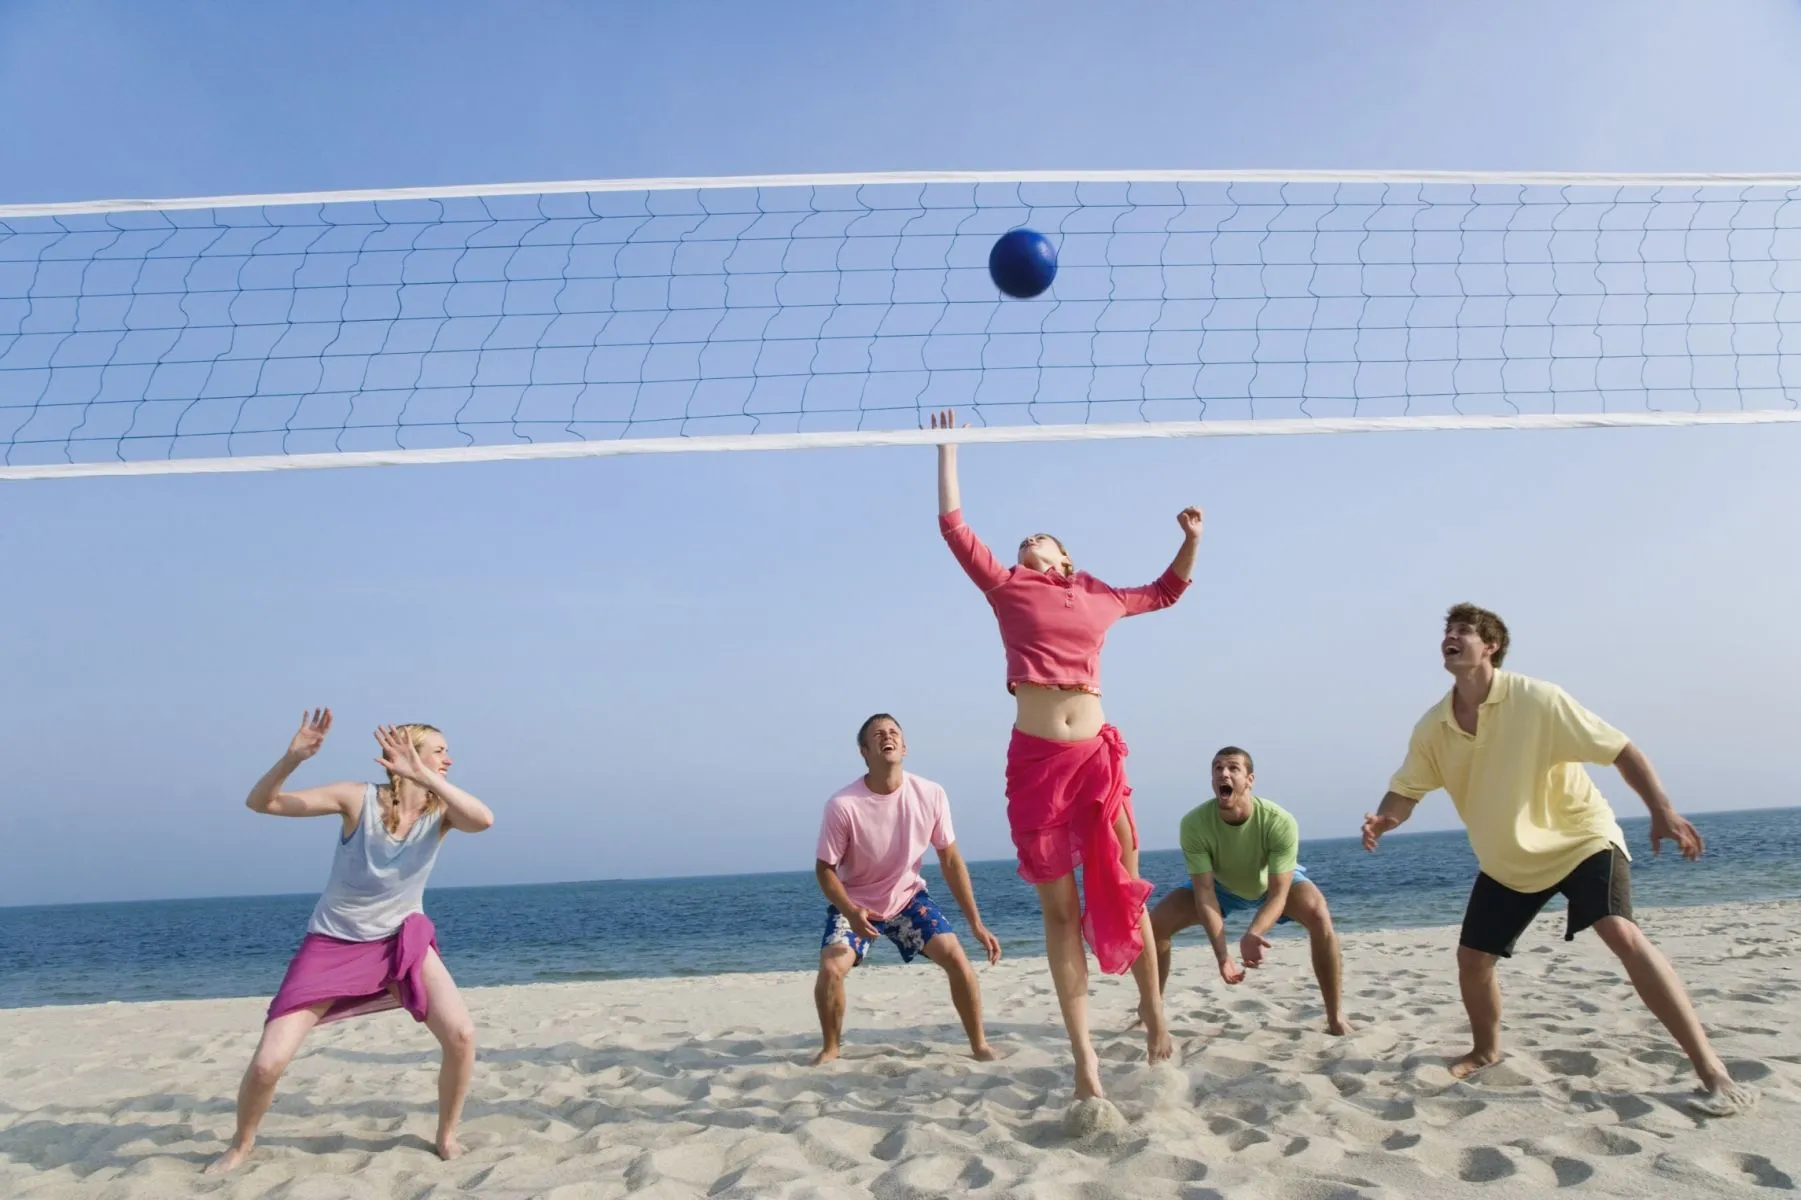 Jugar voleibol desarrolla flexibilidad y fuerza | Enforma180